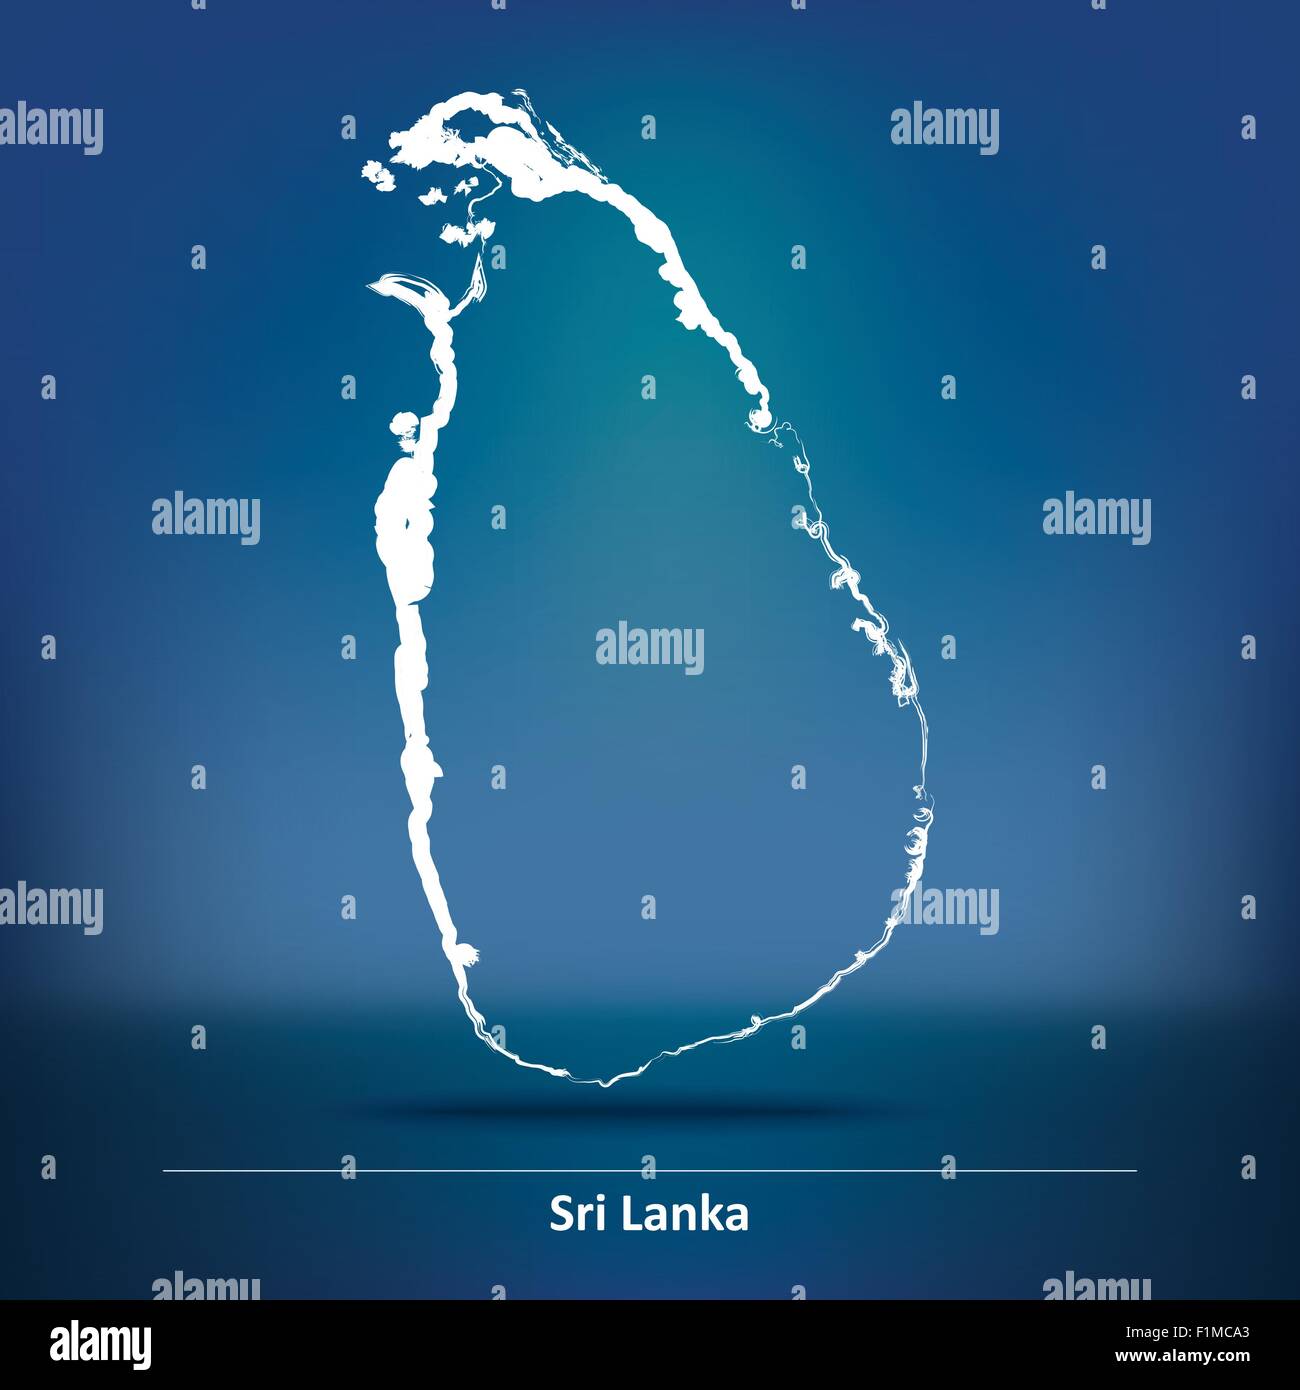 Karte von Sri Lanka - Vektor-Illustration Doodle Stock Vektor